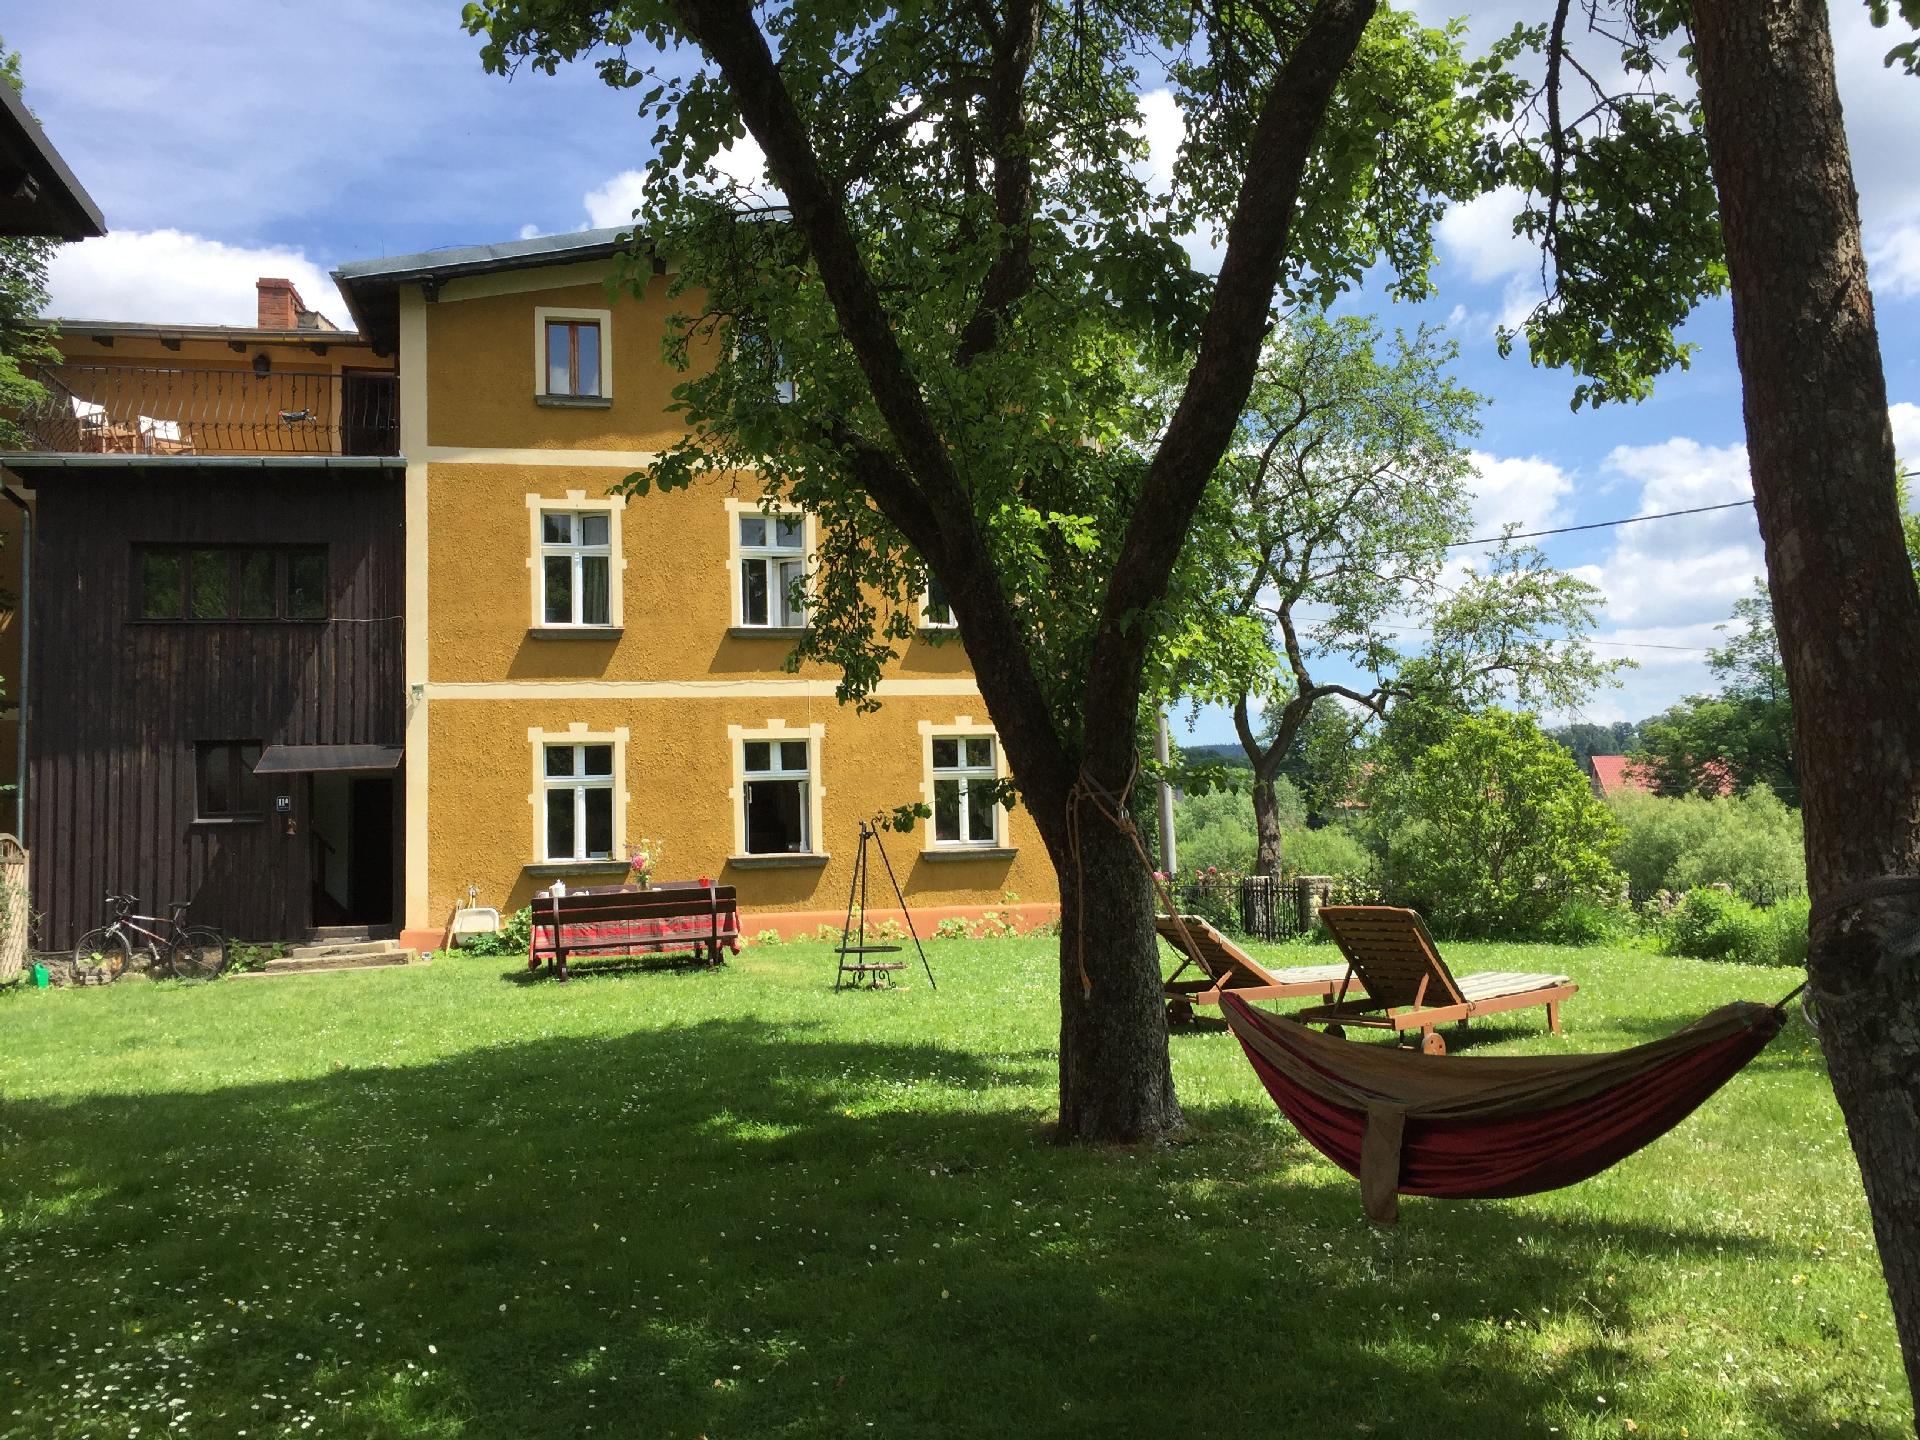 Ferienhaus in Janowice Wielkie mit Grill und Garte Ferienhaus in Polen